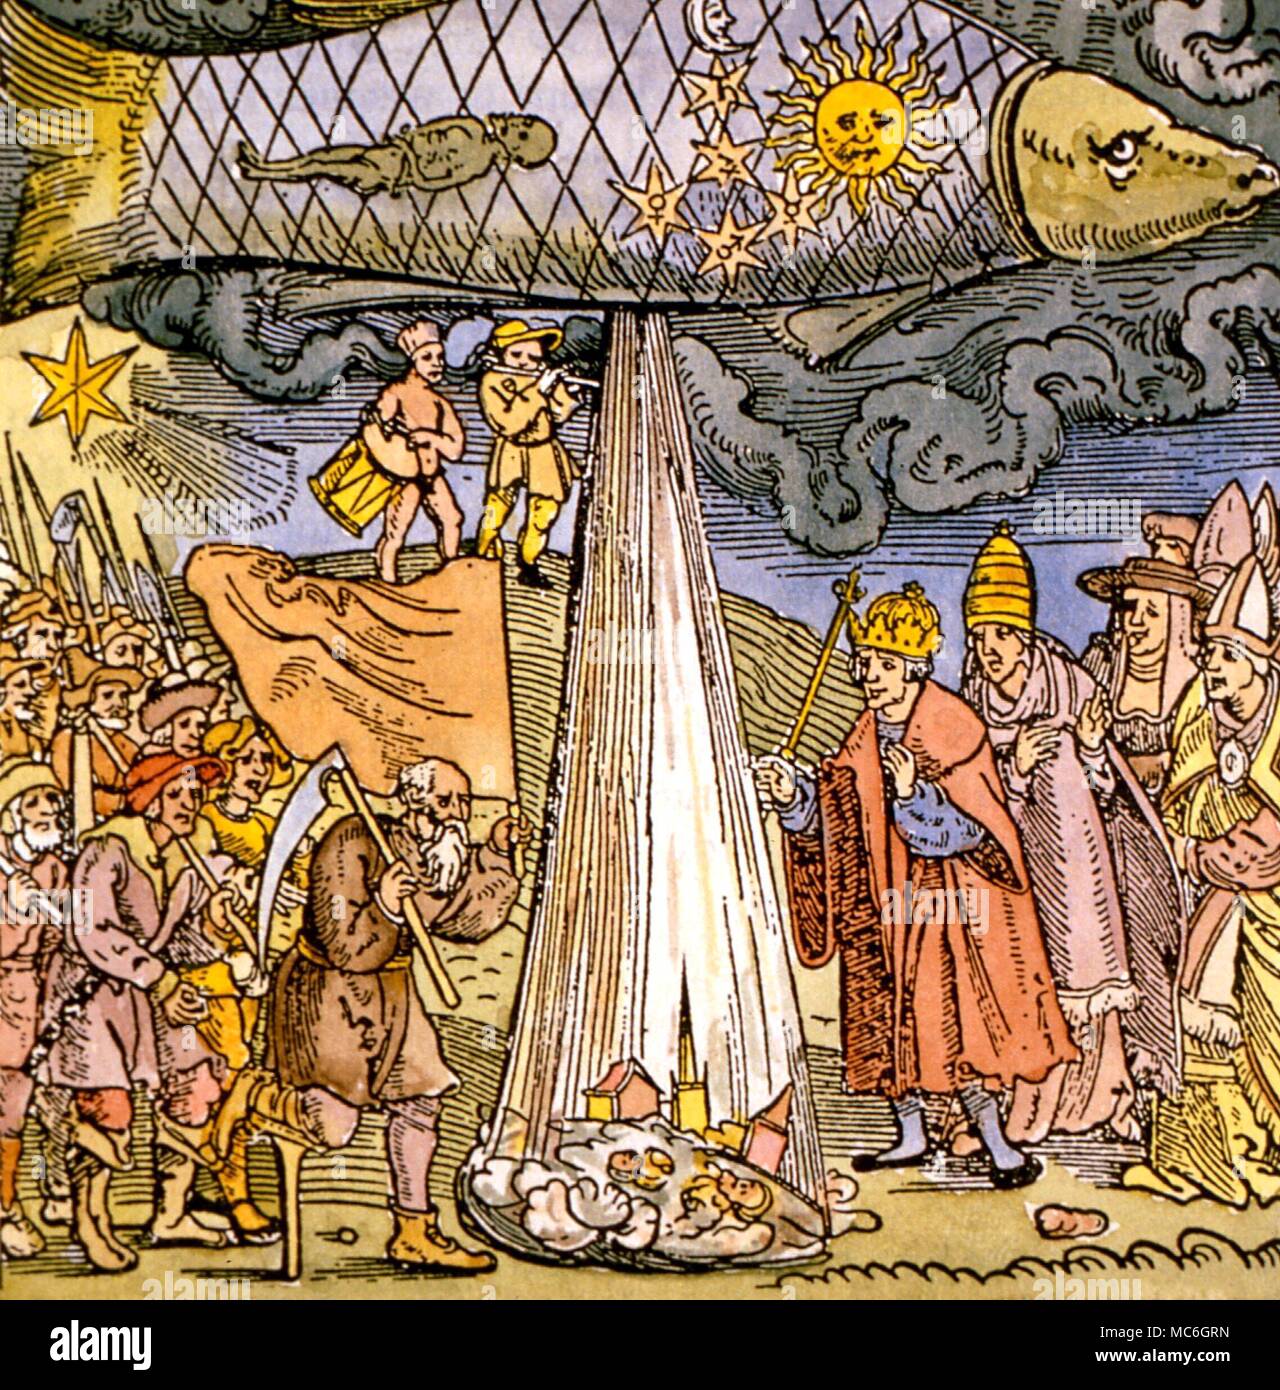 Astrologie - inondations en poissons. Gravure sur bois après Leonhard Reymann's brochure concernant l'satellitium 1524 (conjointement) dans la constellation des Poissons, et les menace d'inondation Banque D'Images